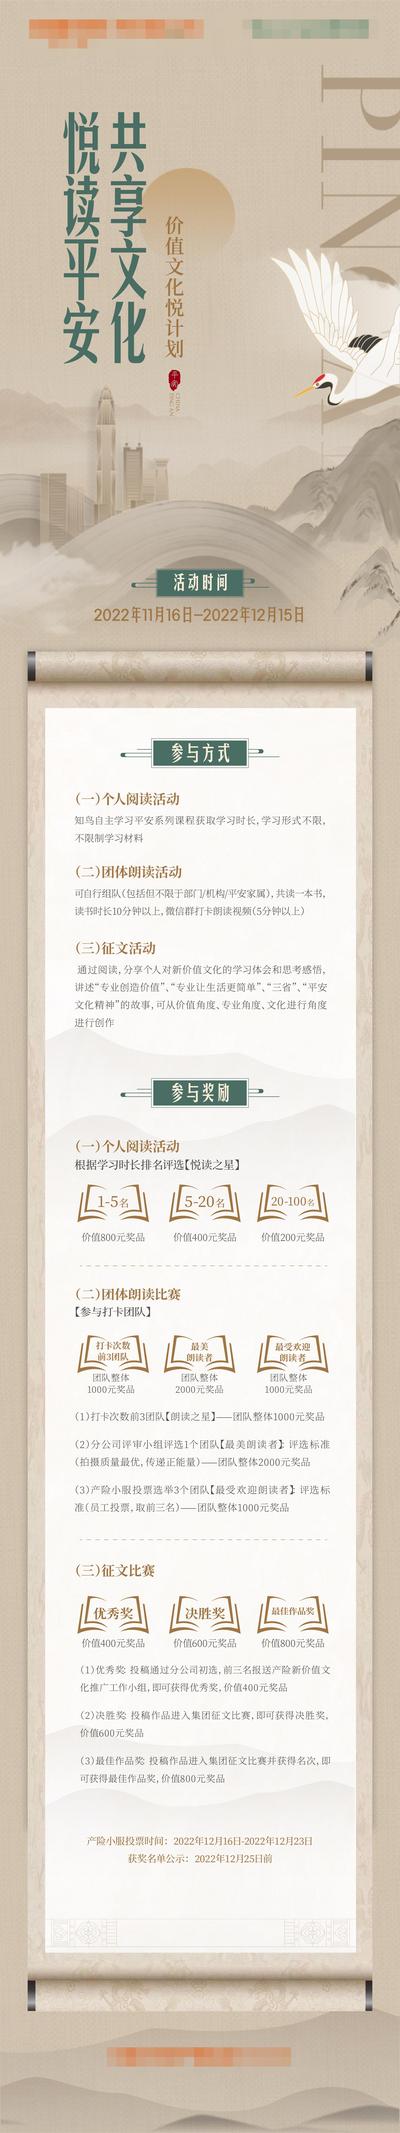 南门网 海报 长图 阅读 读书会 文化 中式 中国风 底蕴 卷轴 仙鹤